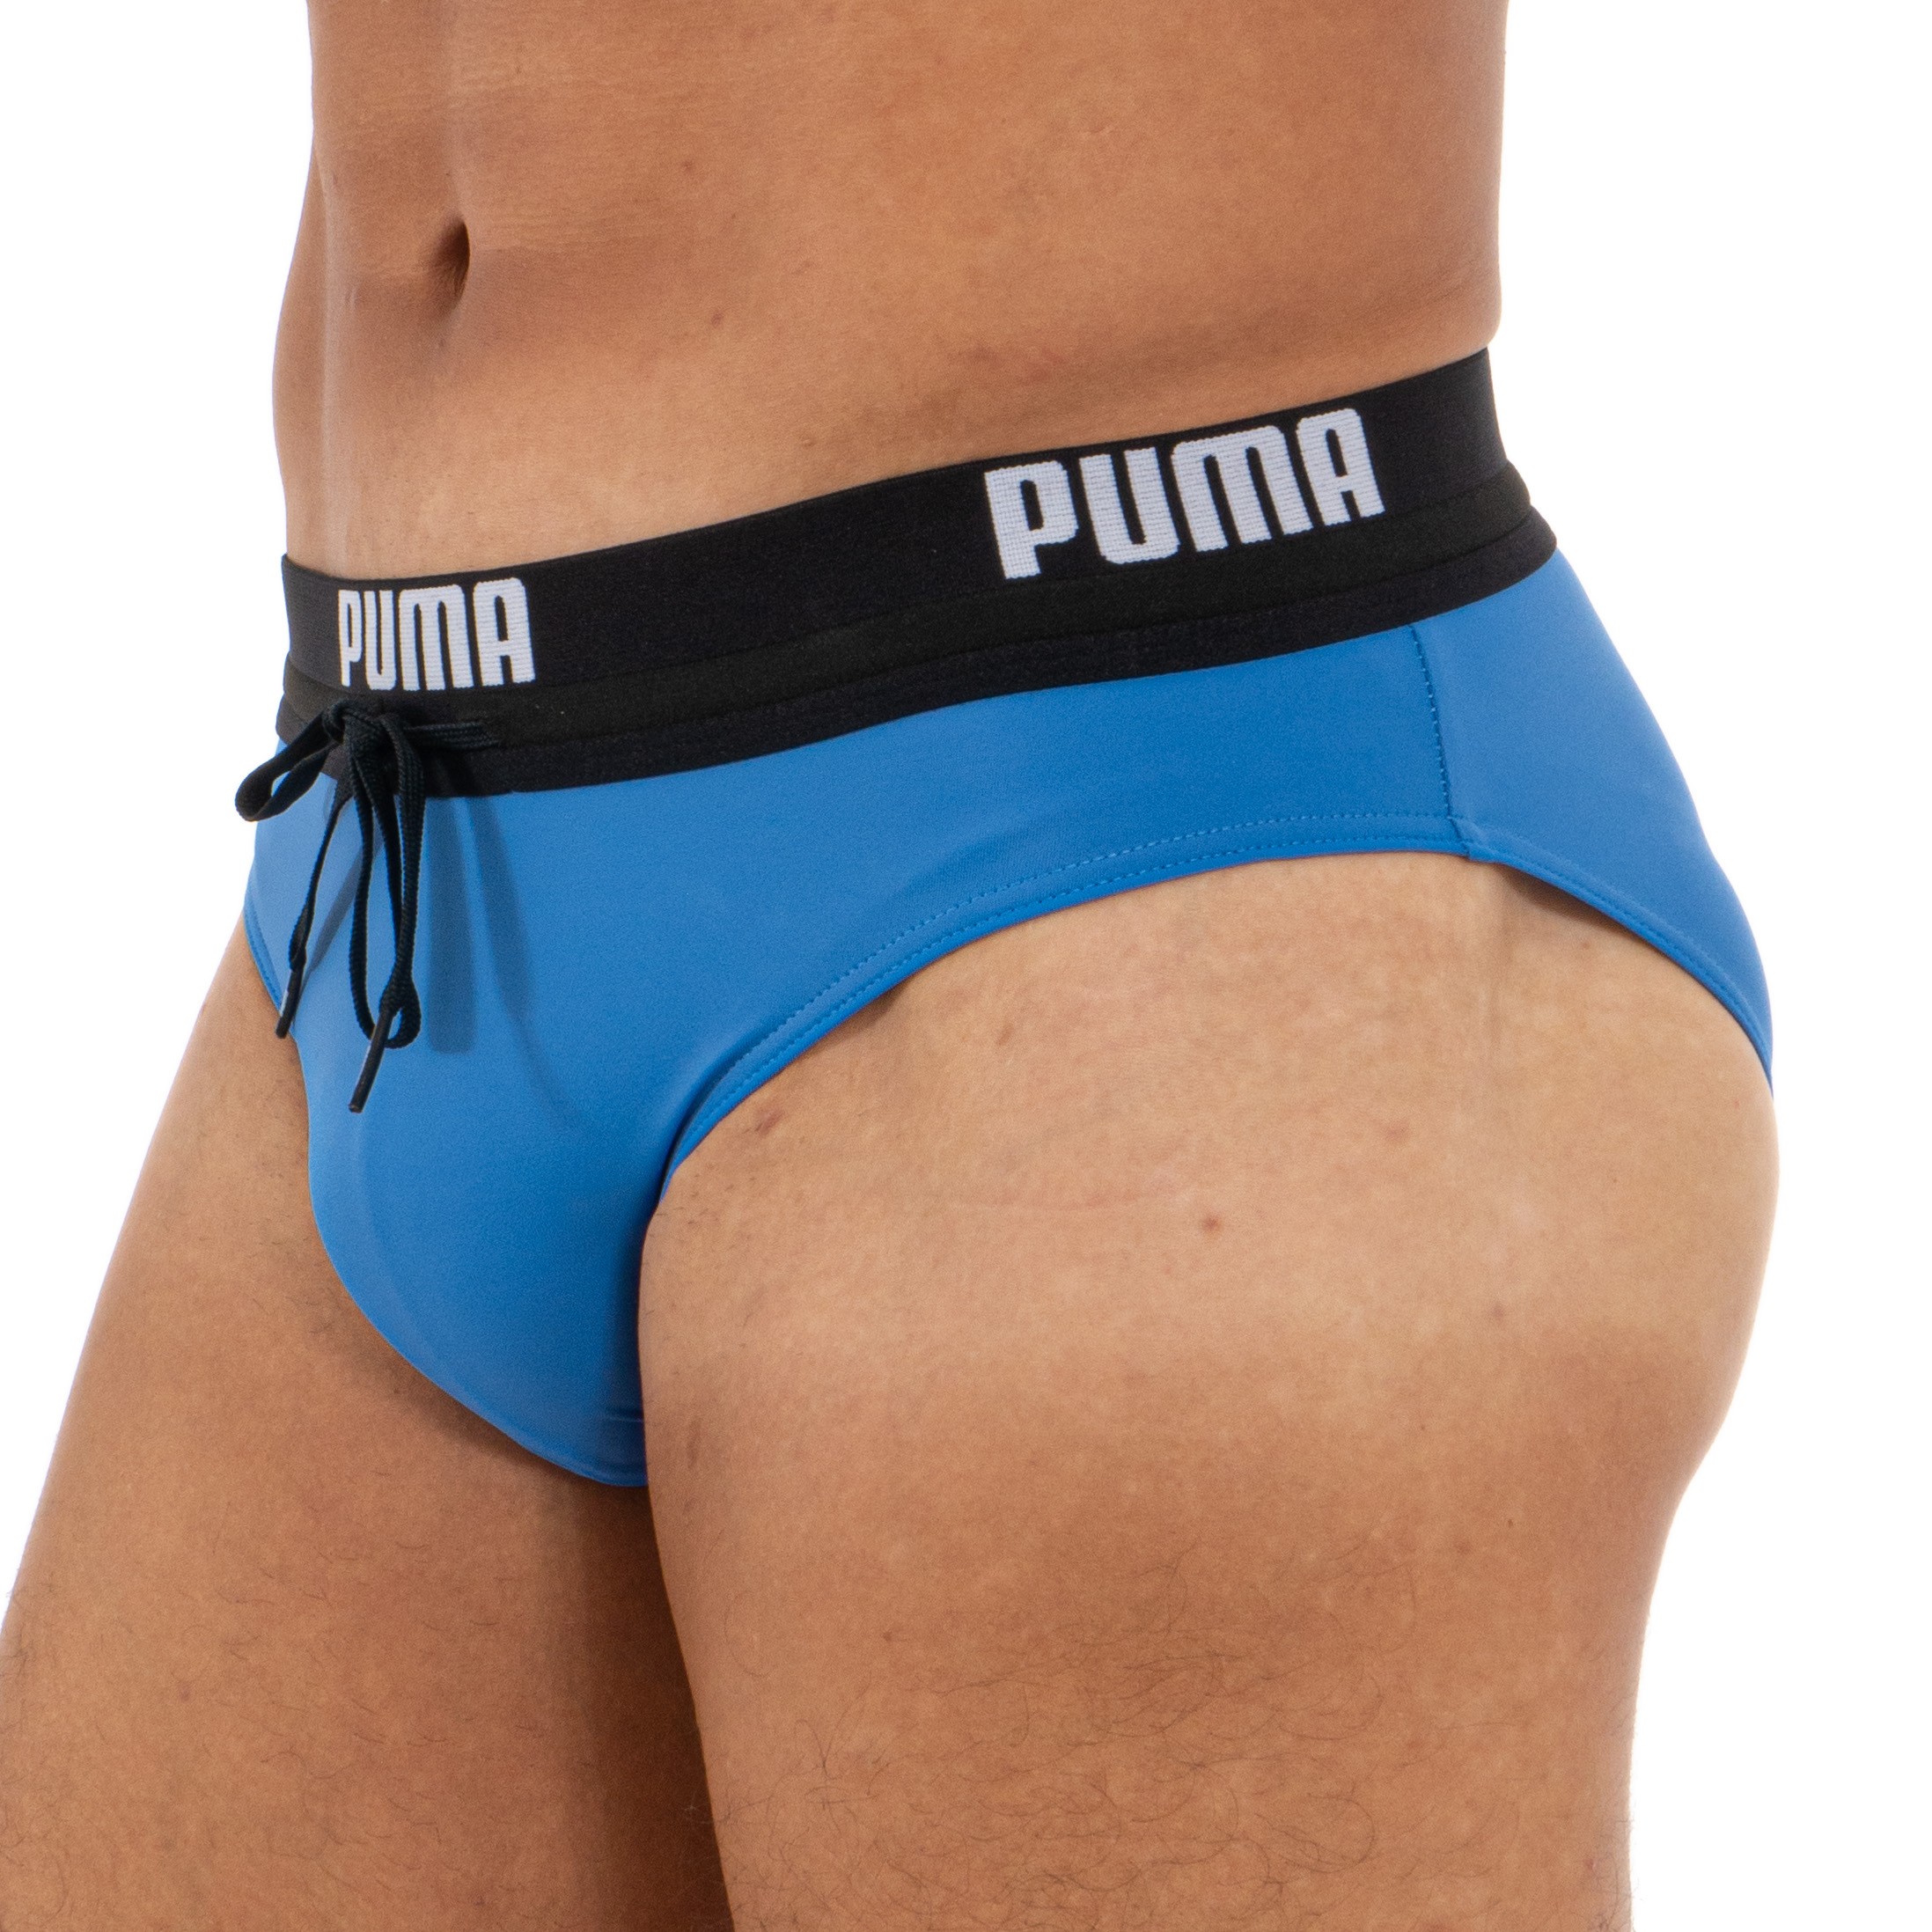 PUMA Swim Logo - blue swimsuit: Swim Briefs for man brand Puma for ...